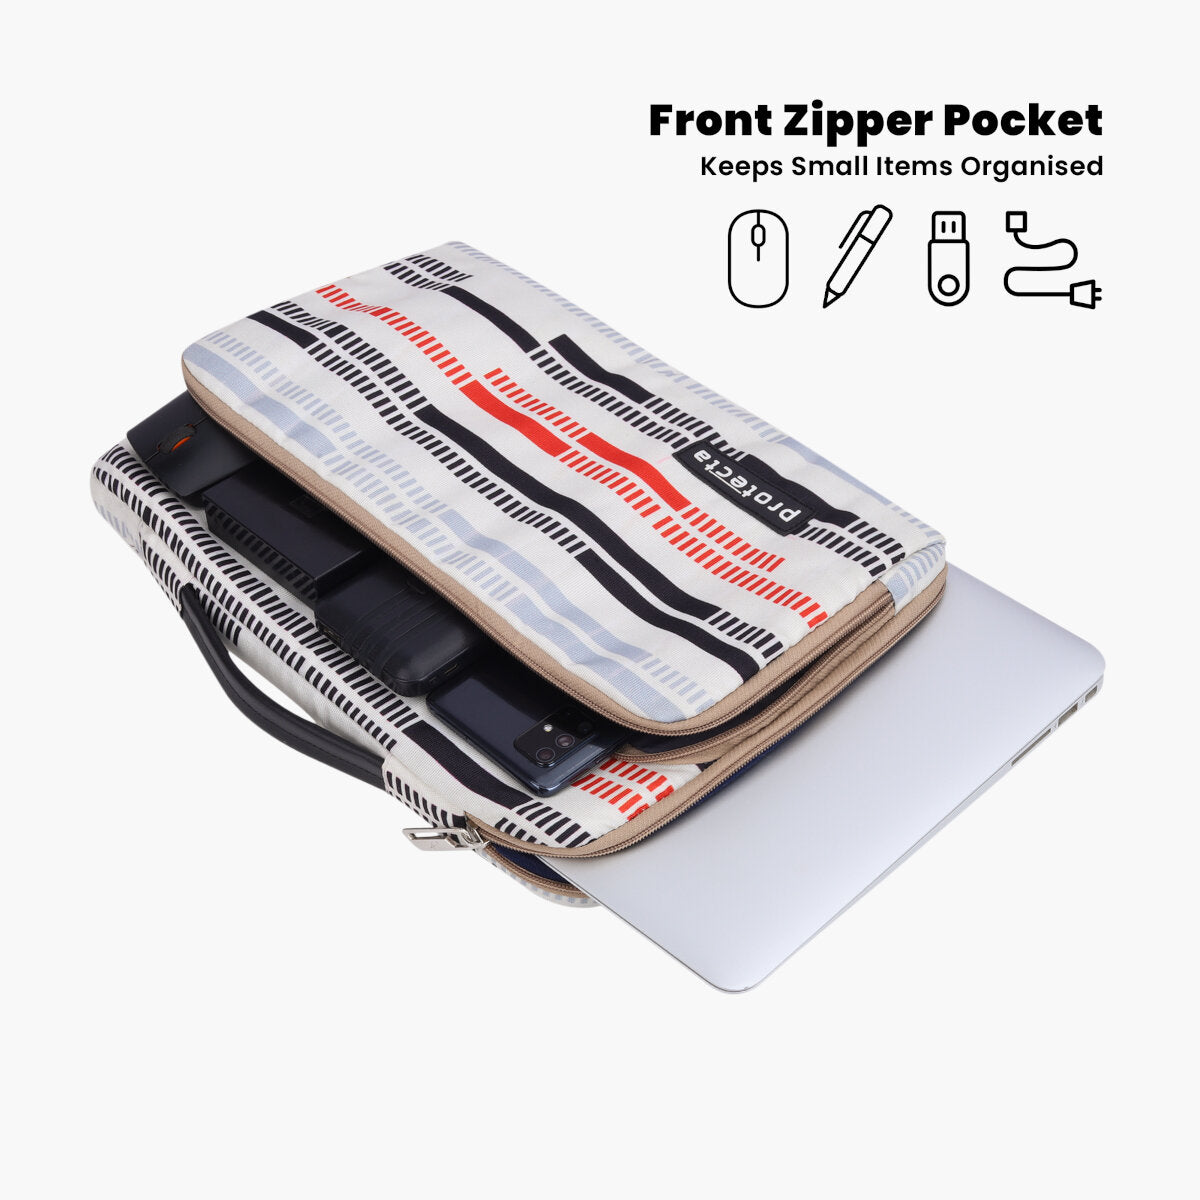 Broken Lines Print | Protecta Oscar Laptop Bag